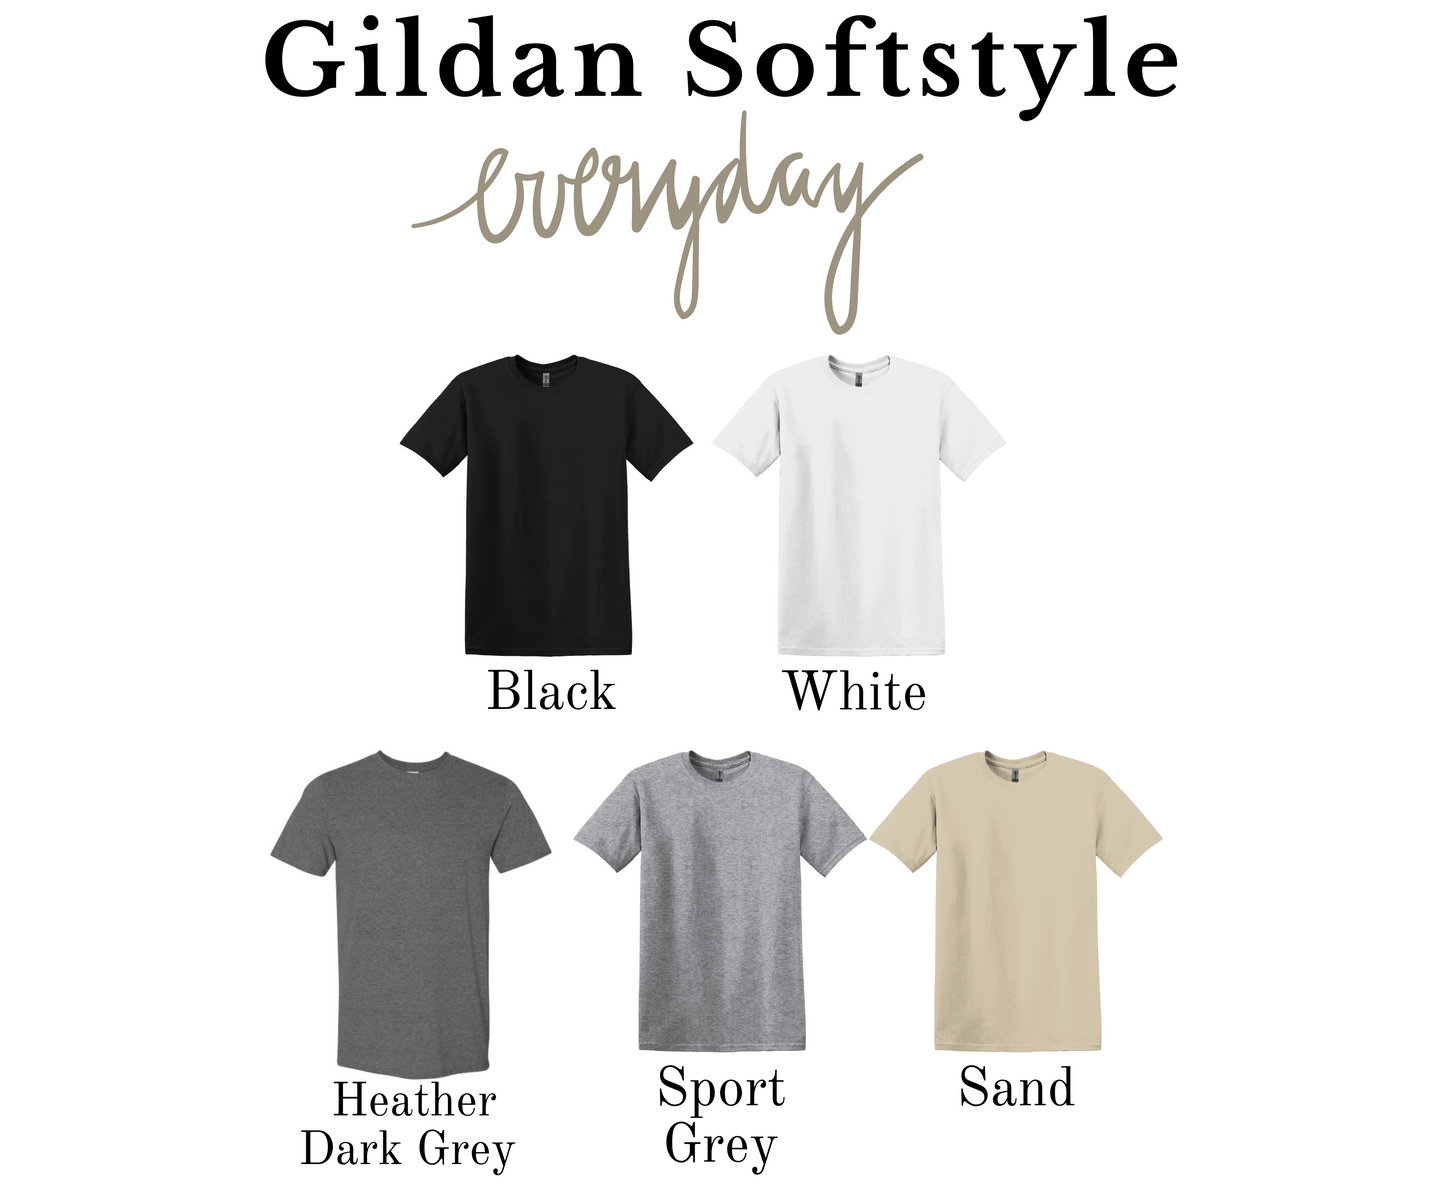 Lucky Sequin Effect Gildan Softstyle Tshirt or Sweatshirt